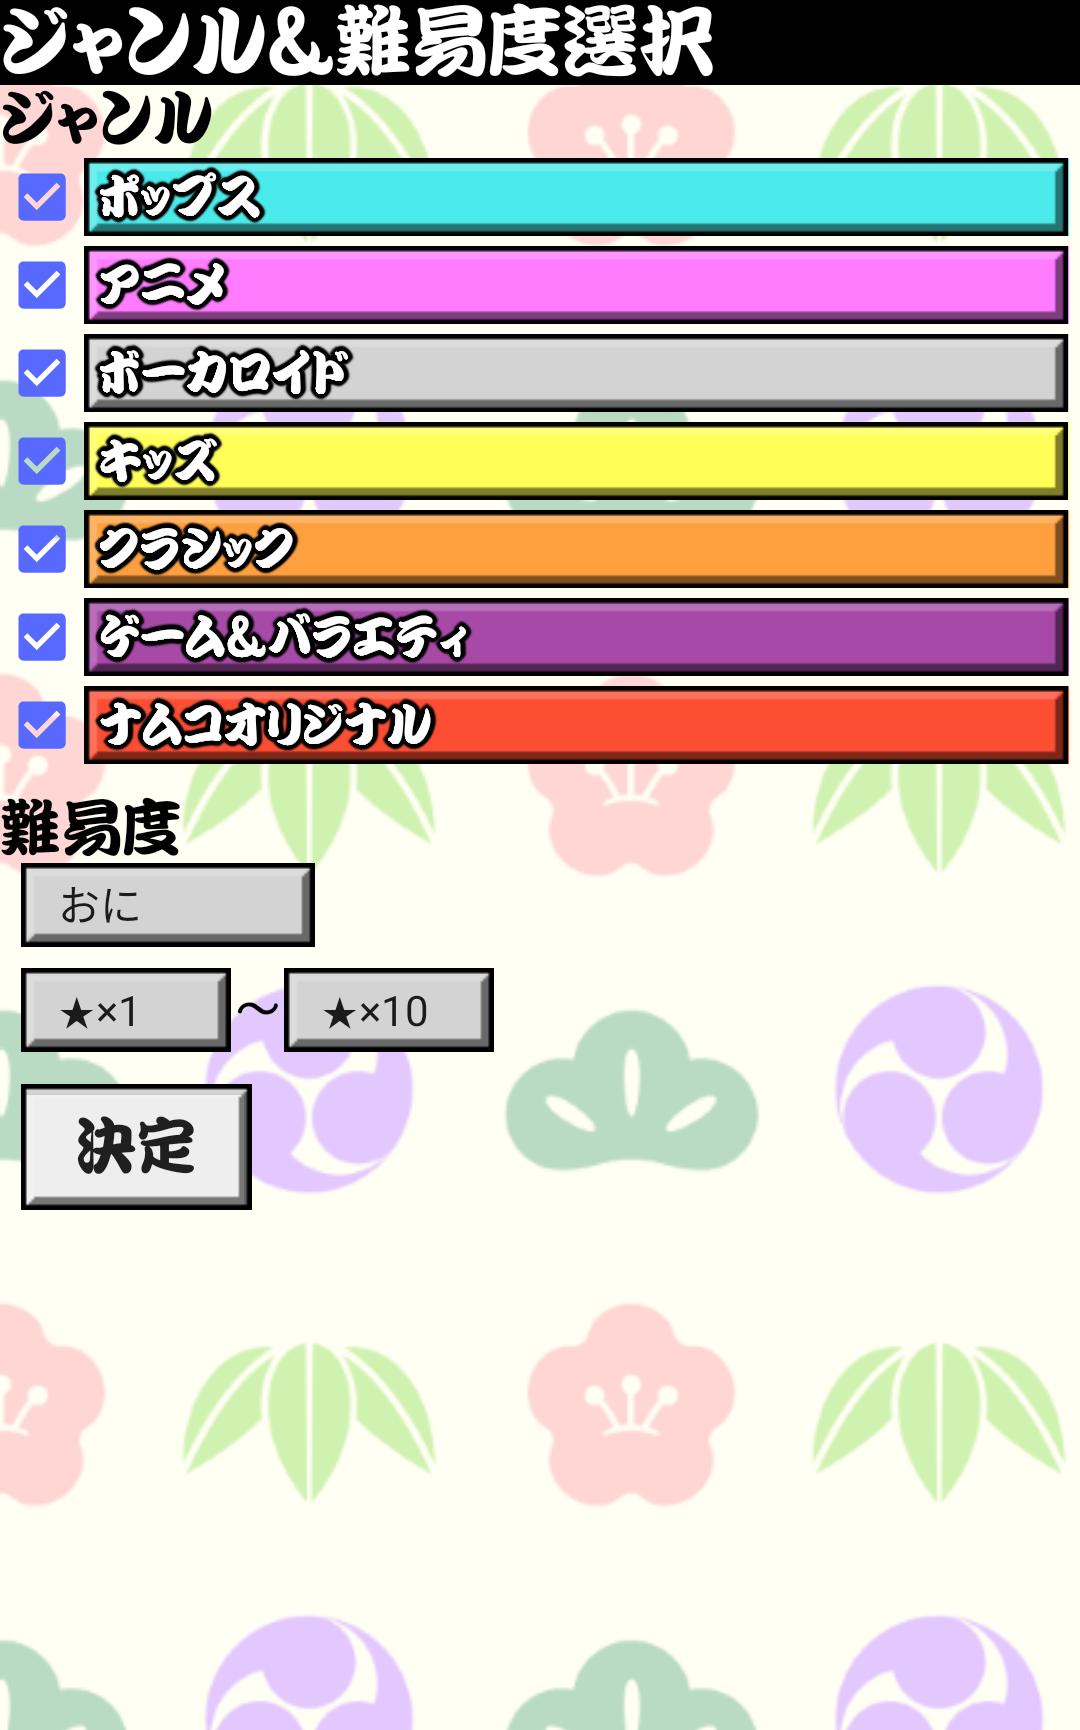 太鼓おみくじ＆雑談所ビューア2 1.63 Screenshot 10